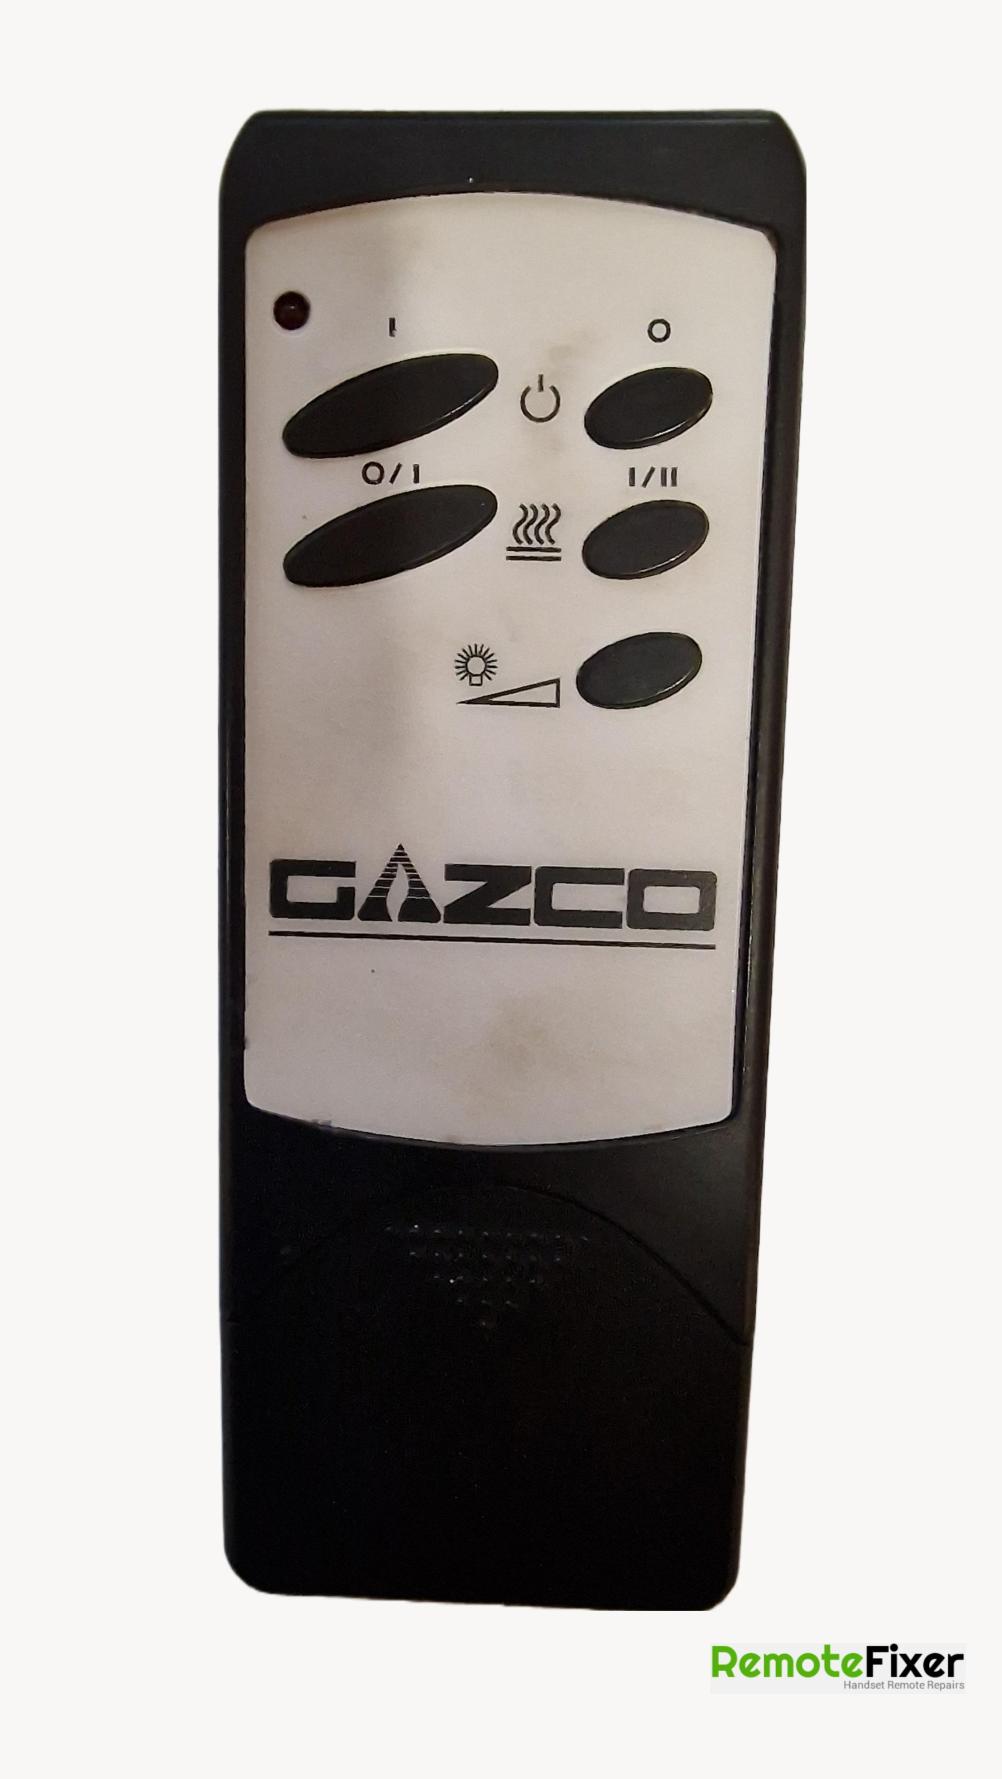 Gazco  Remote Control - Front Image